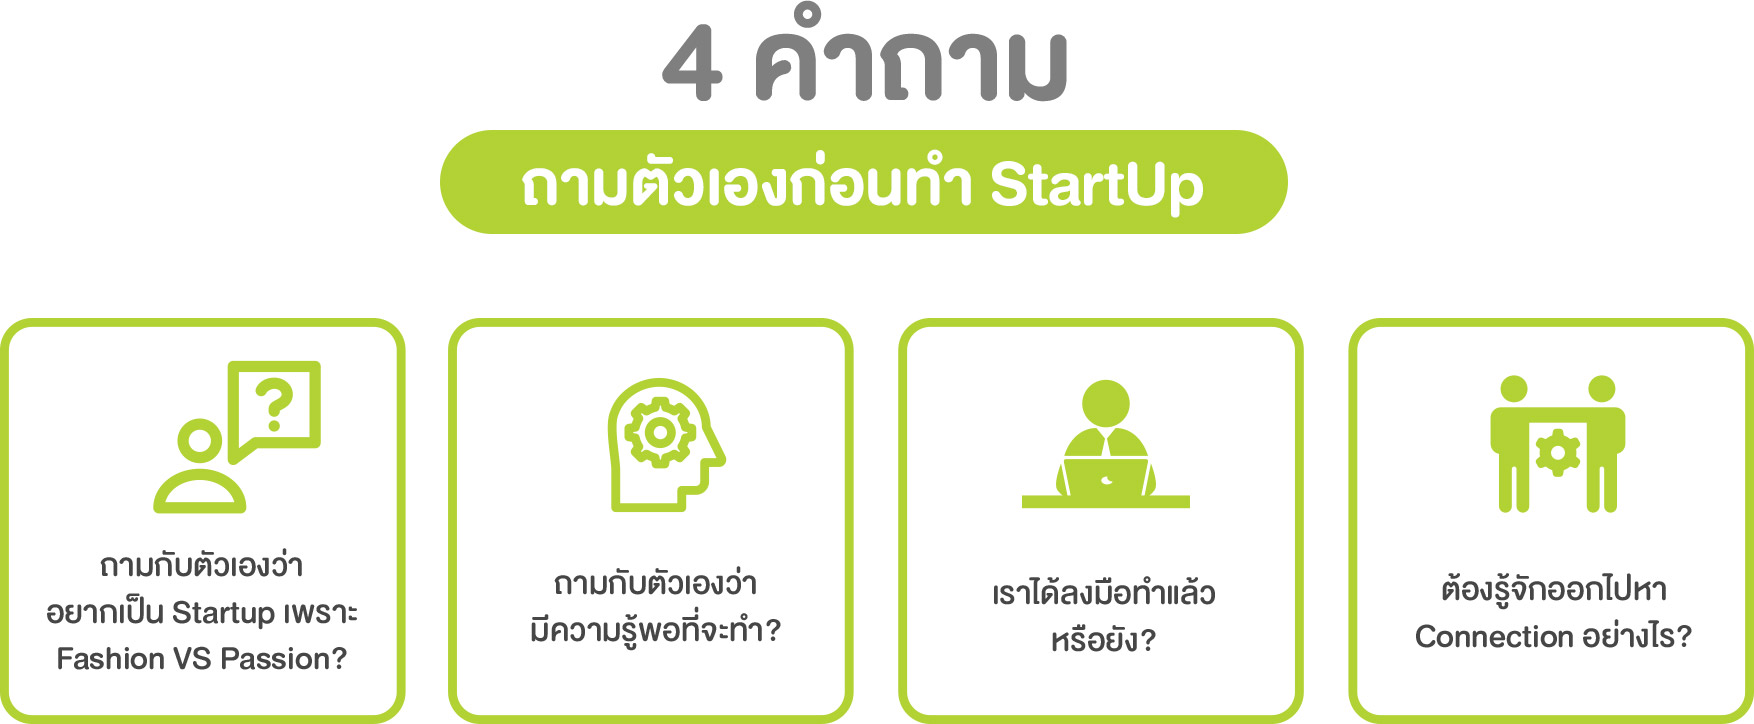 4 คำถาม ถามตัวเองก่อนทำ Startup Thailand